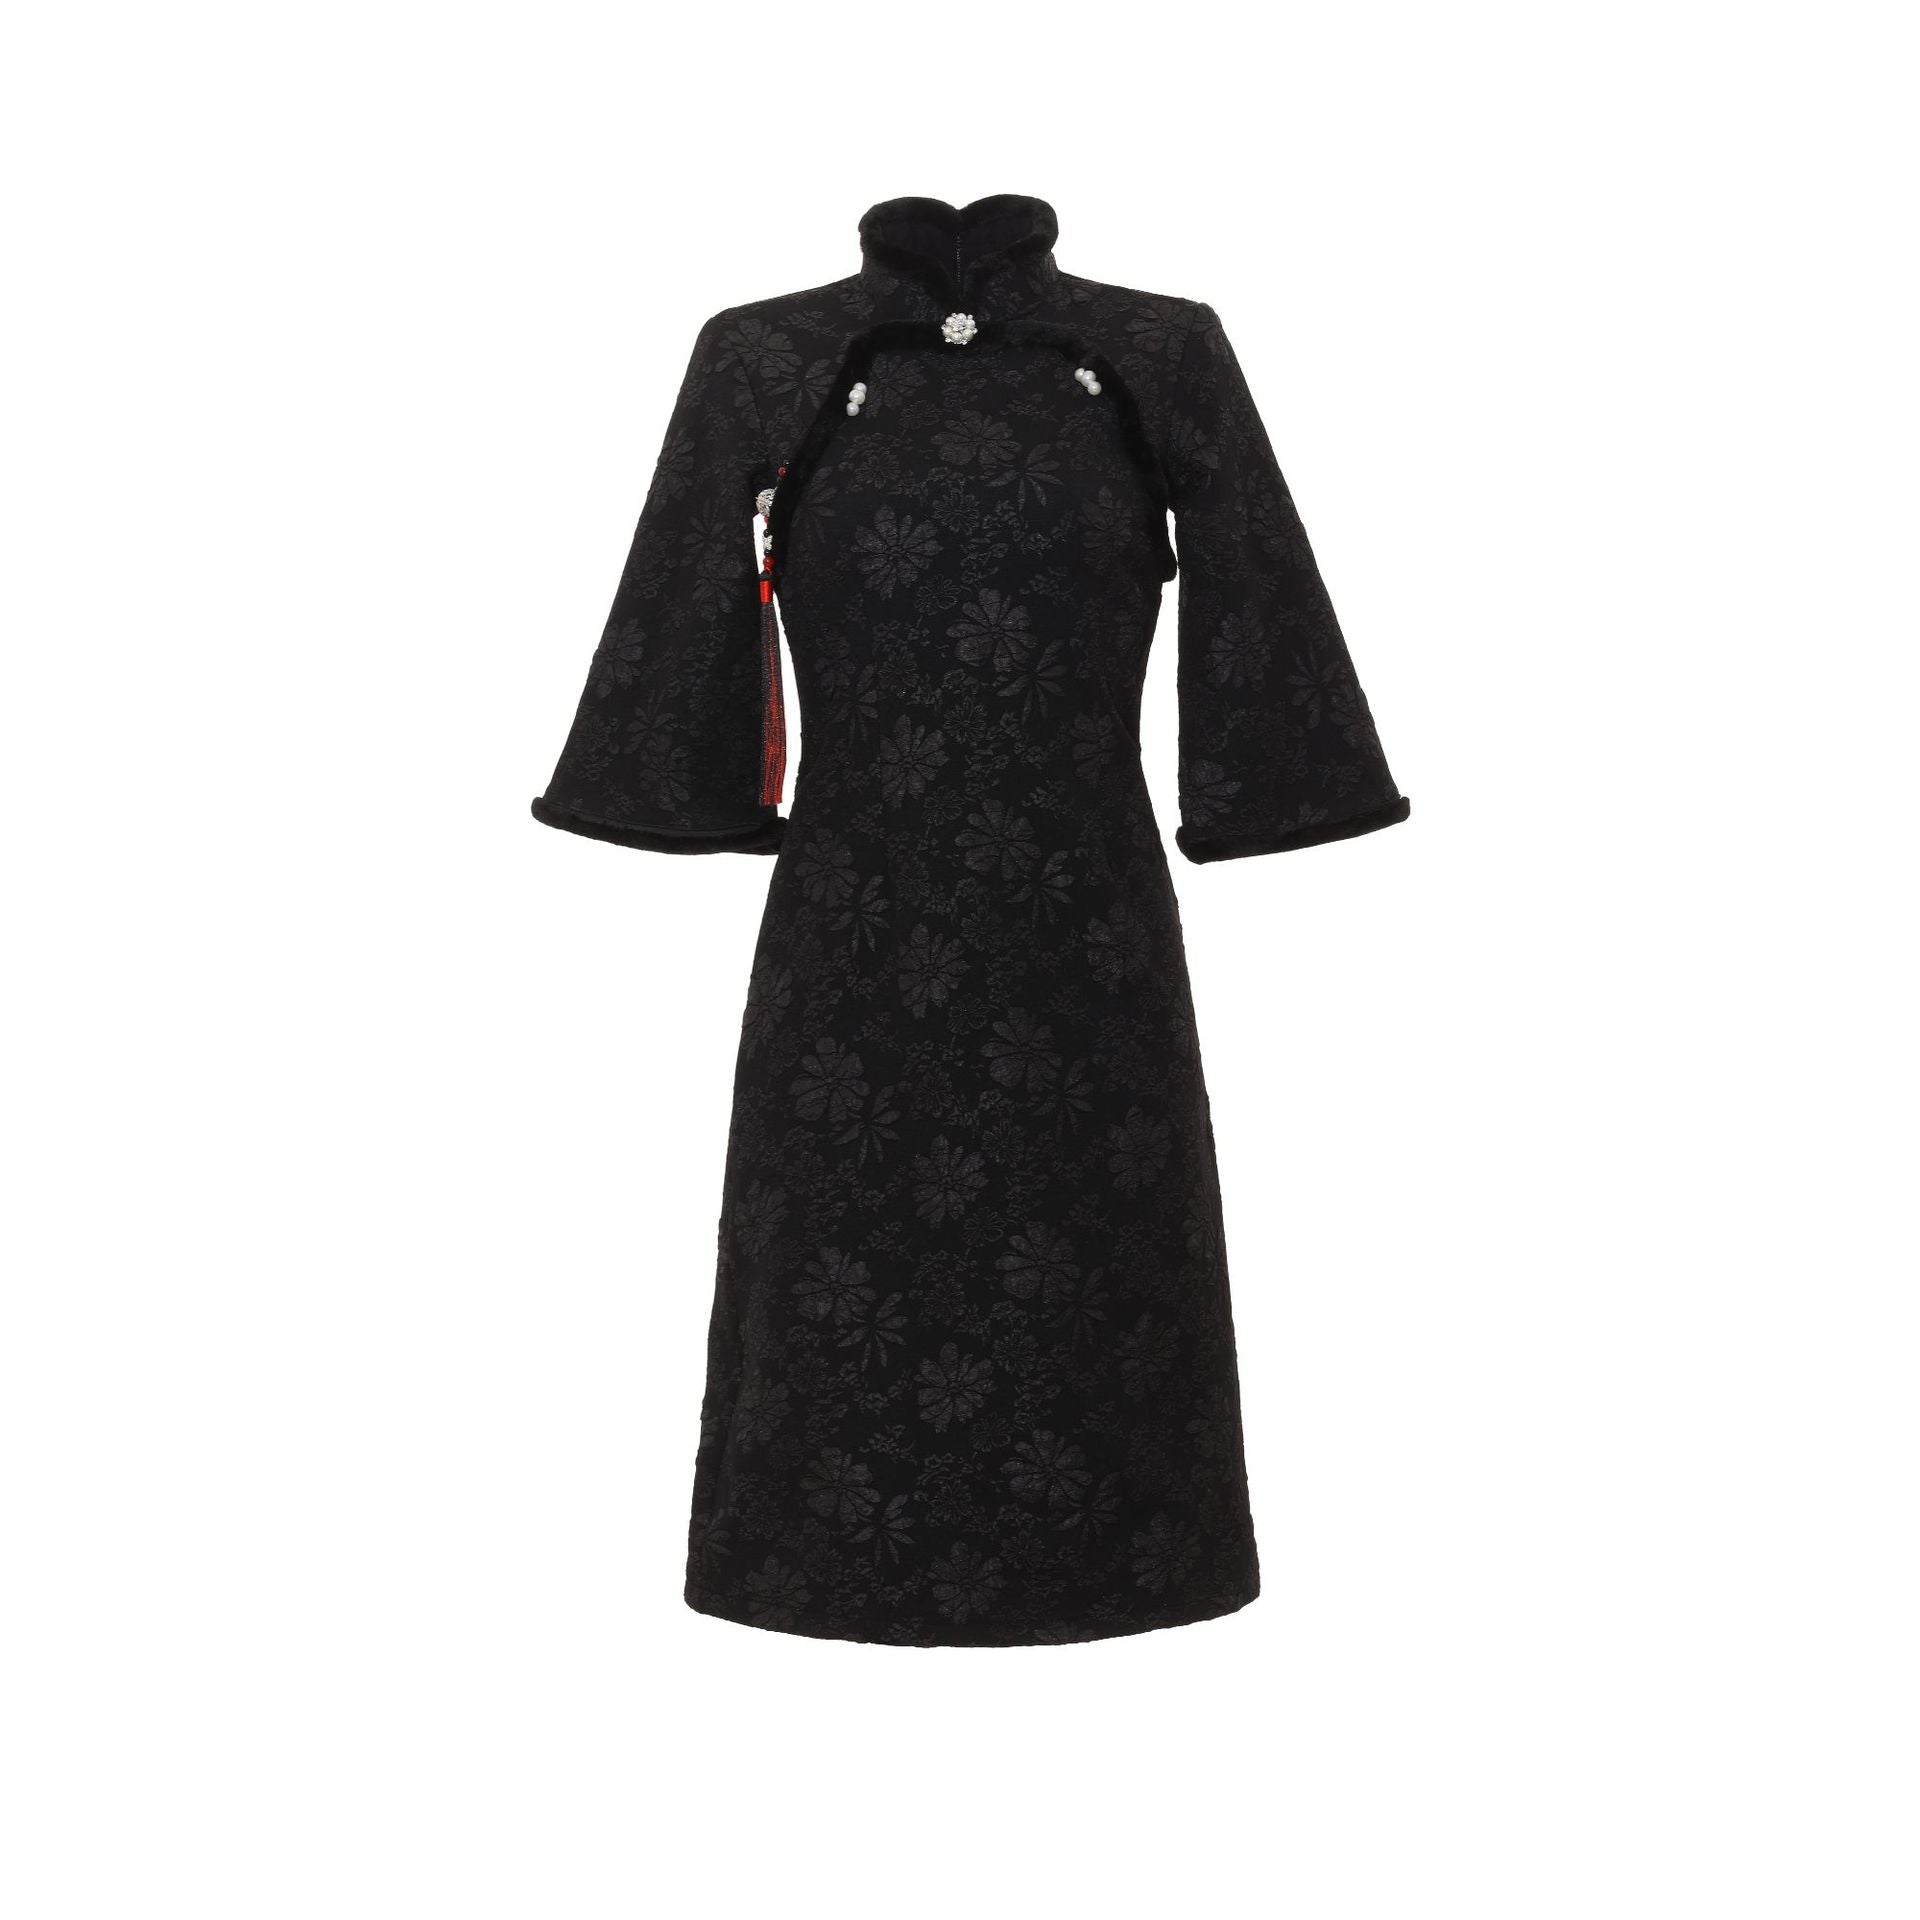 Autumn & Winter 3D Print Cheongsam Midi Dress with Tassel Brooch & Half Sleeves HQ4011